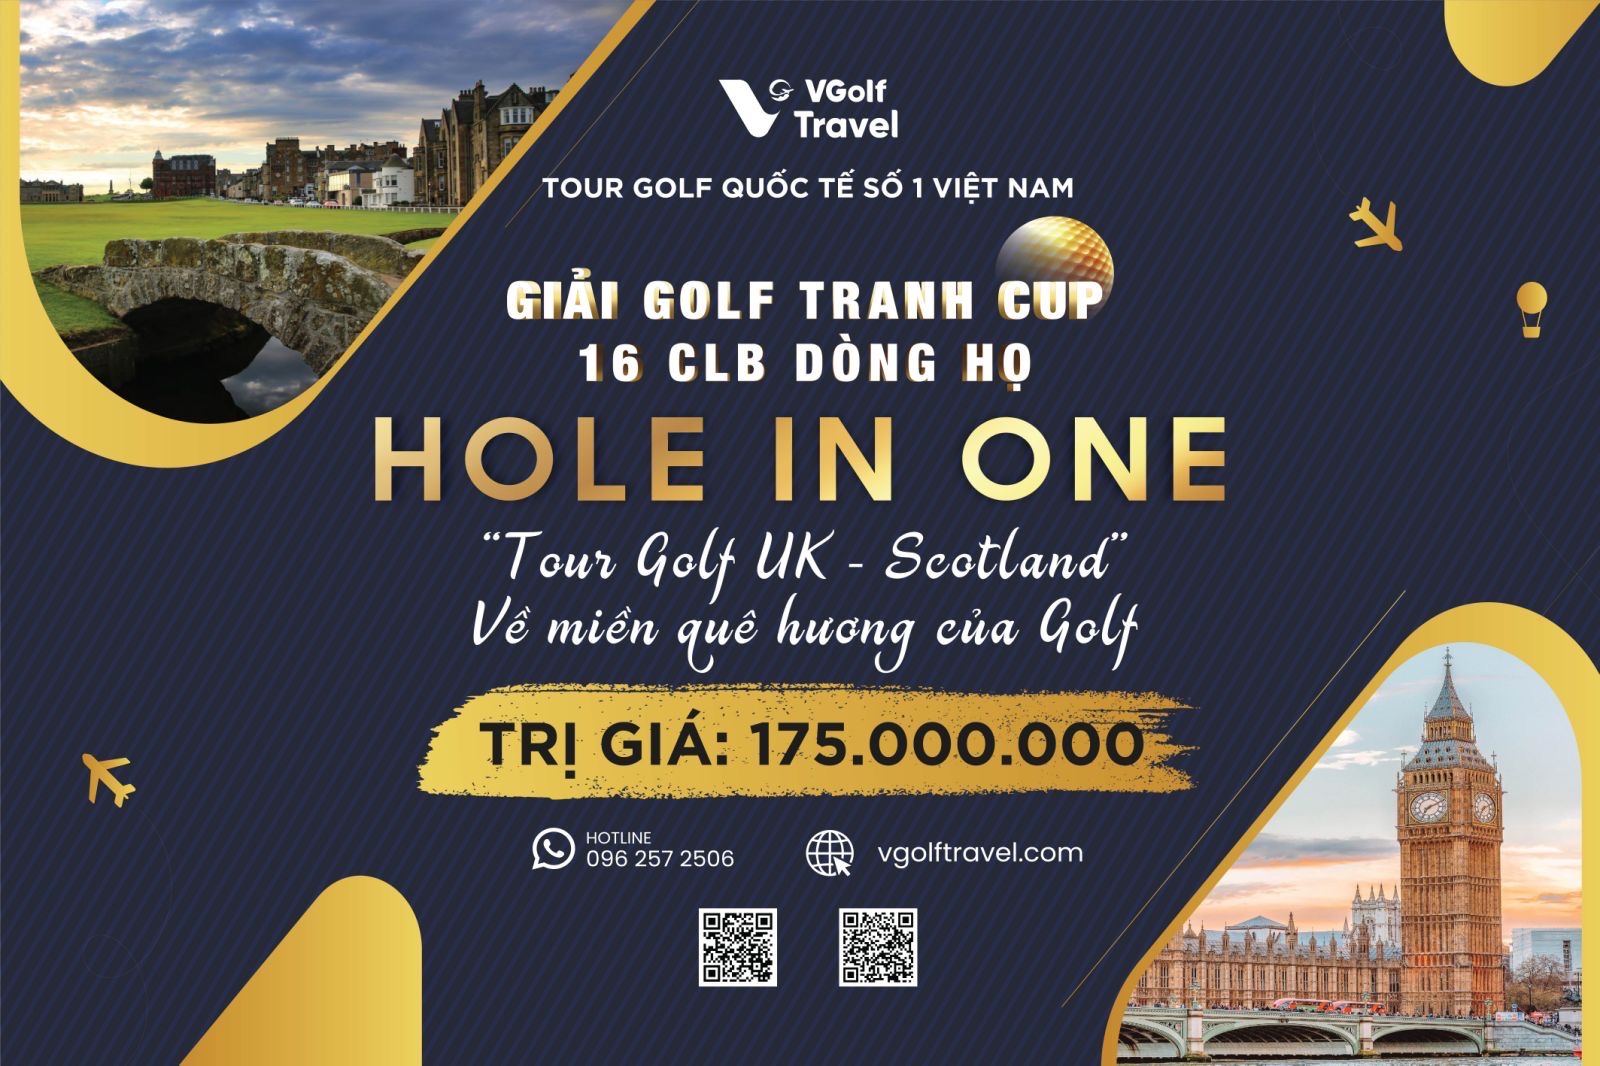 tour golf UK - Scotland